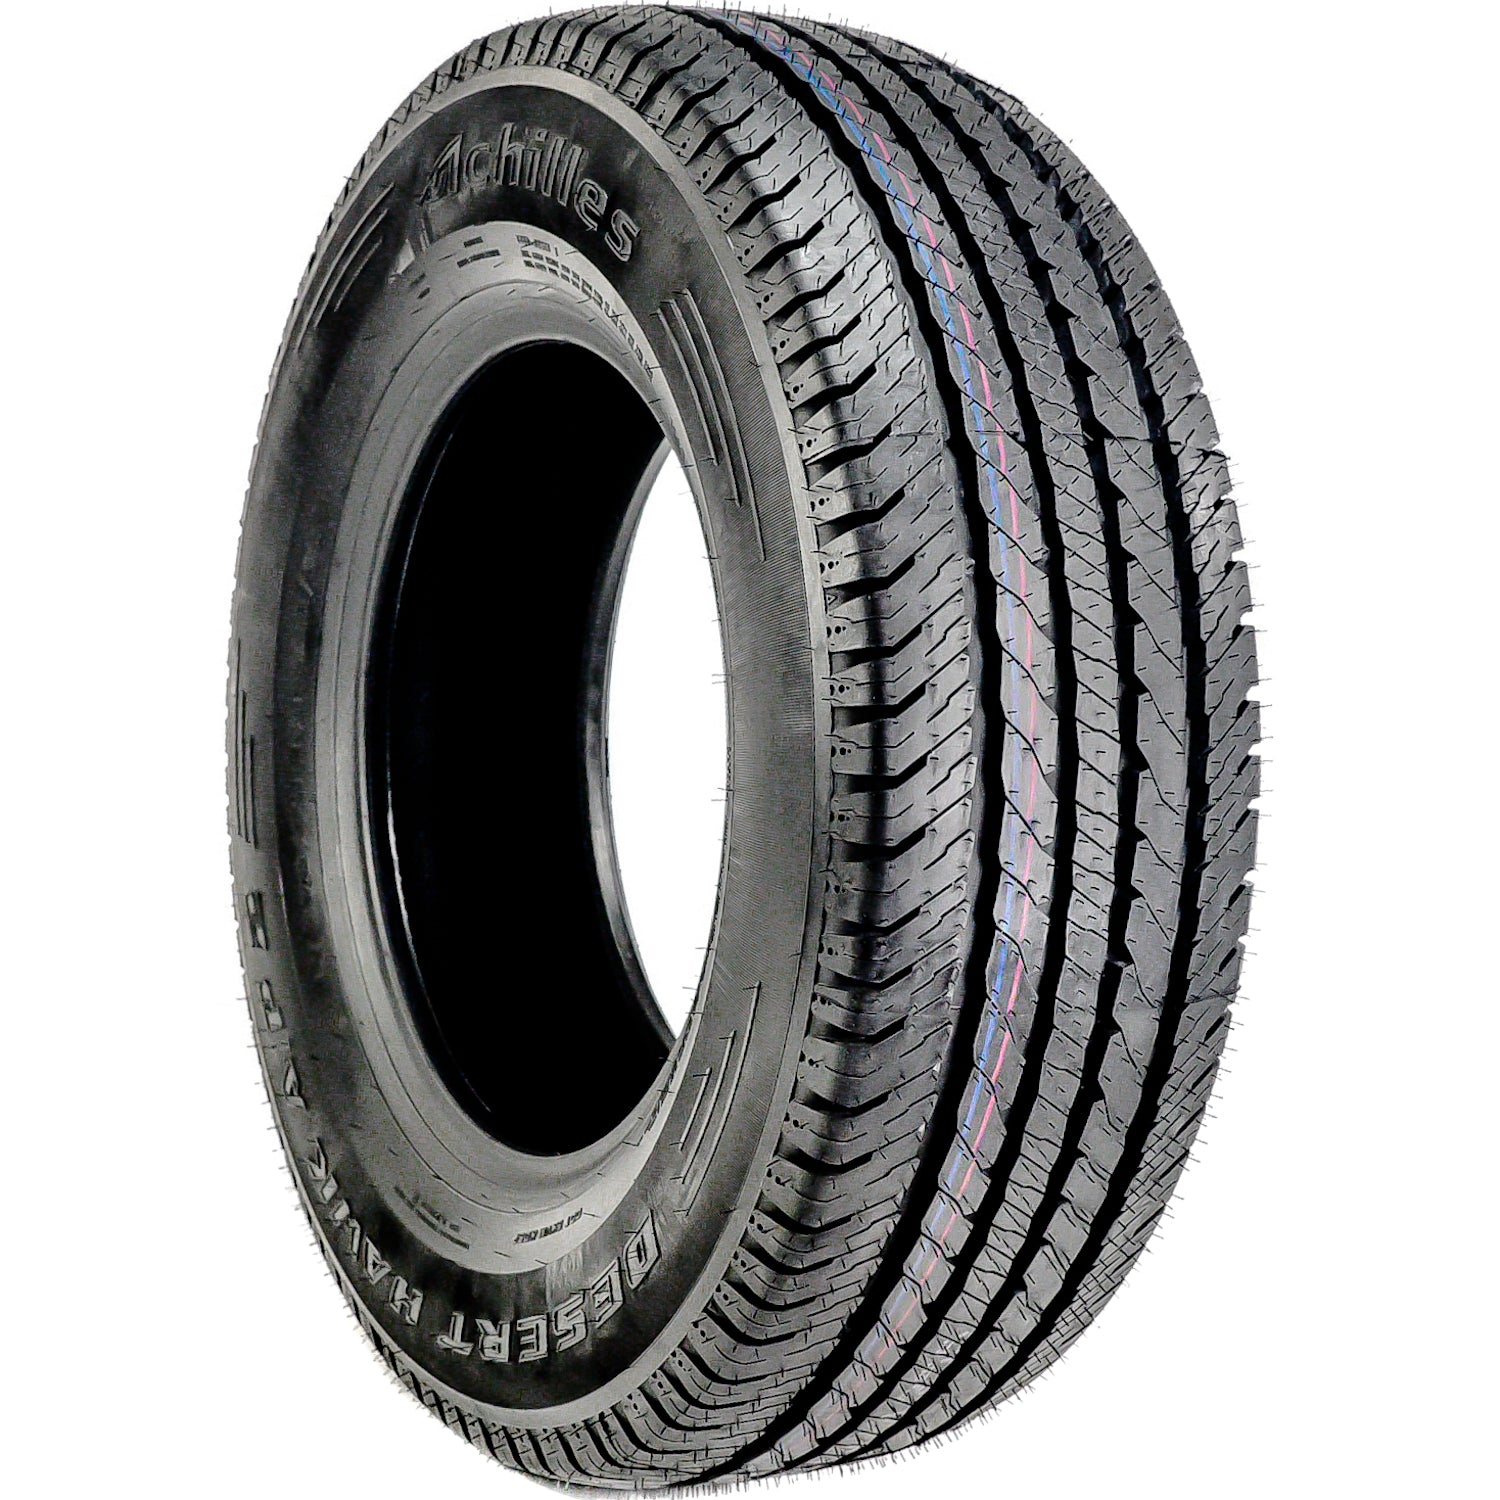 ACHILLES DESERT HAWK A/P 2 LT245/70R17 (30.6X9.7R 17) Tires